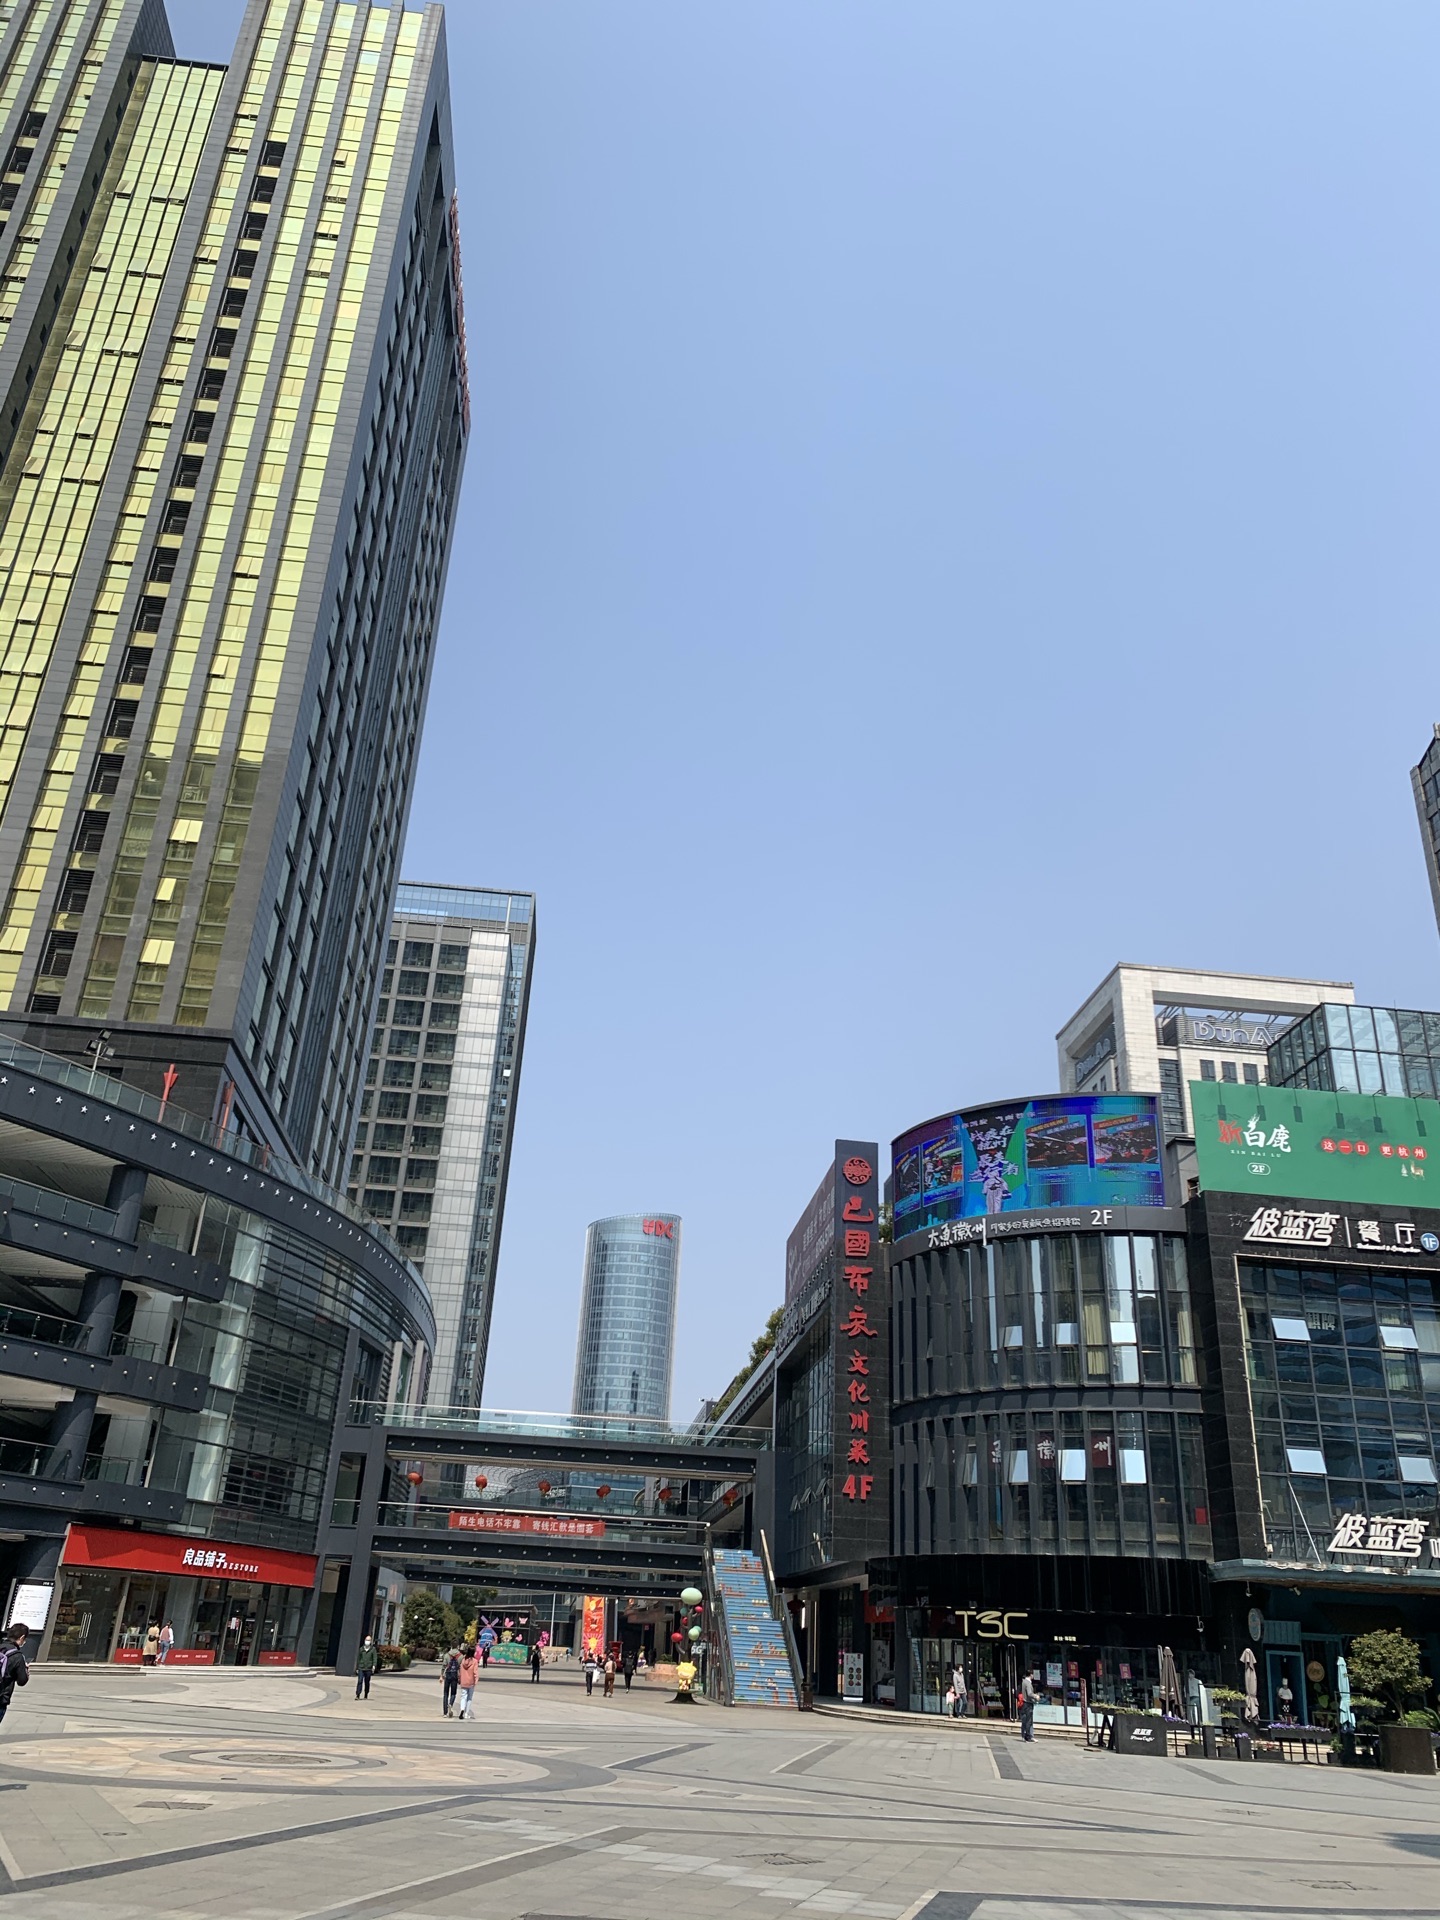 星光大道是杭州滨江区最早的商业中心 经过几期的建设 这里已经南北向